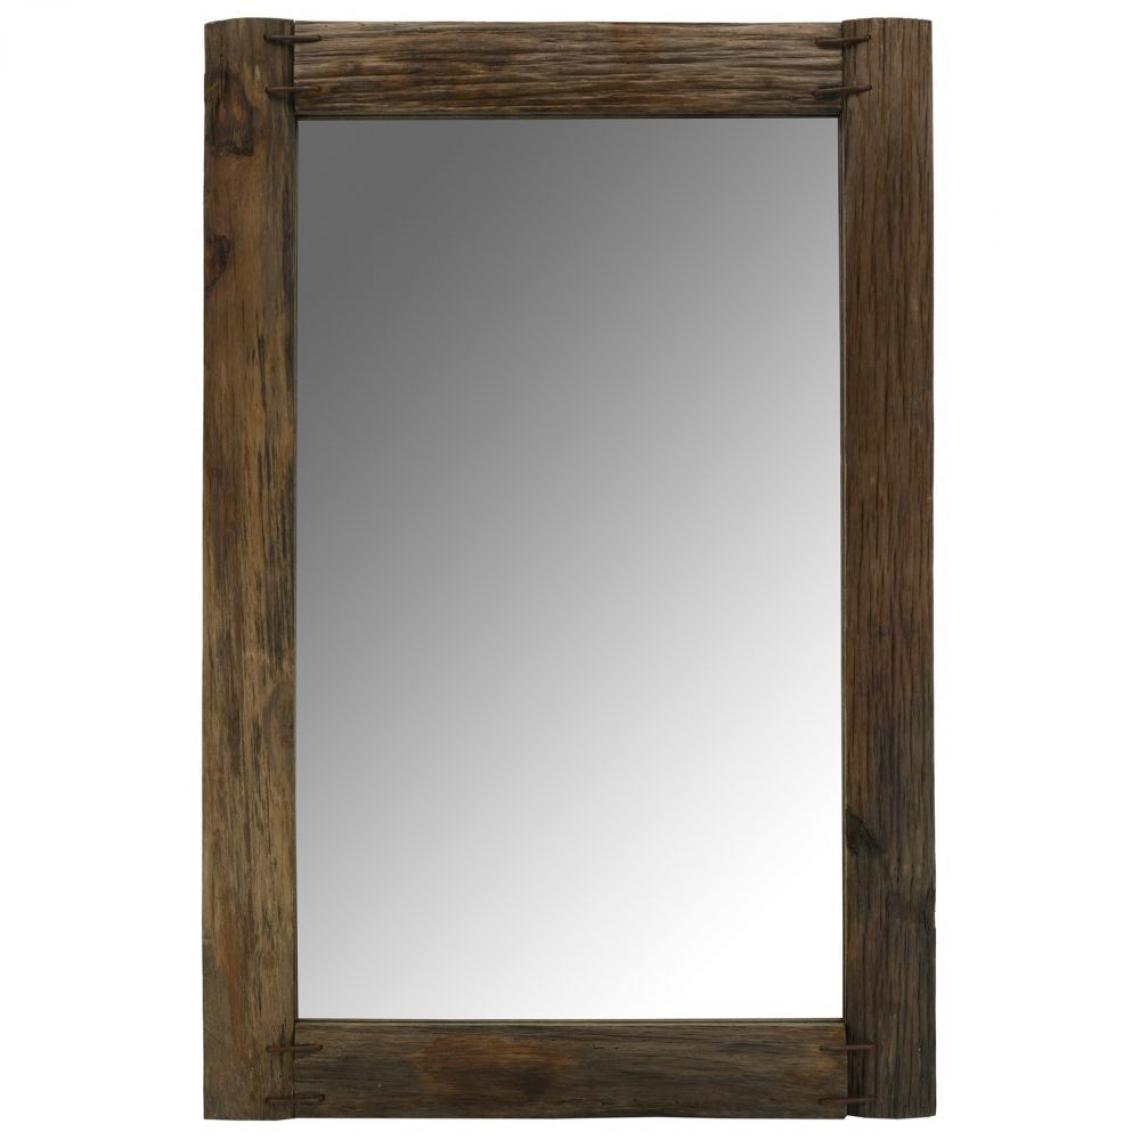 Aubry Gaspard - Miroir rectangulaire en bois recyclé rustique Rectangle - Miroirs